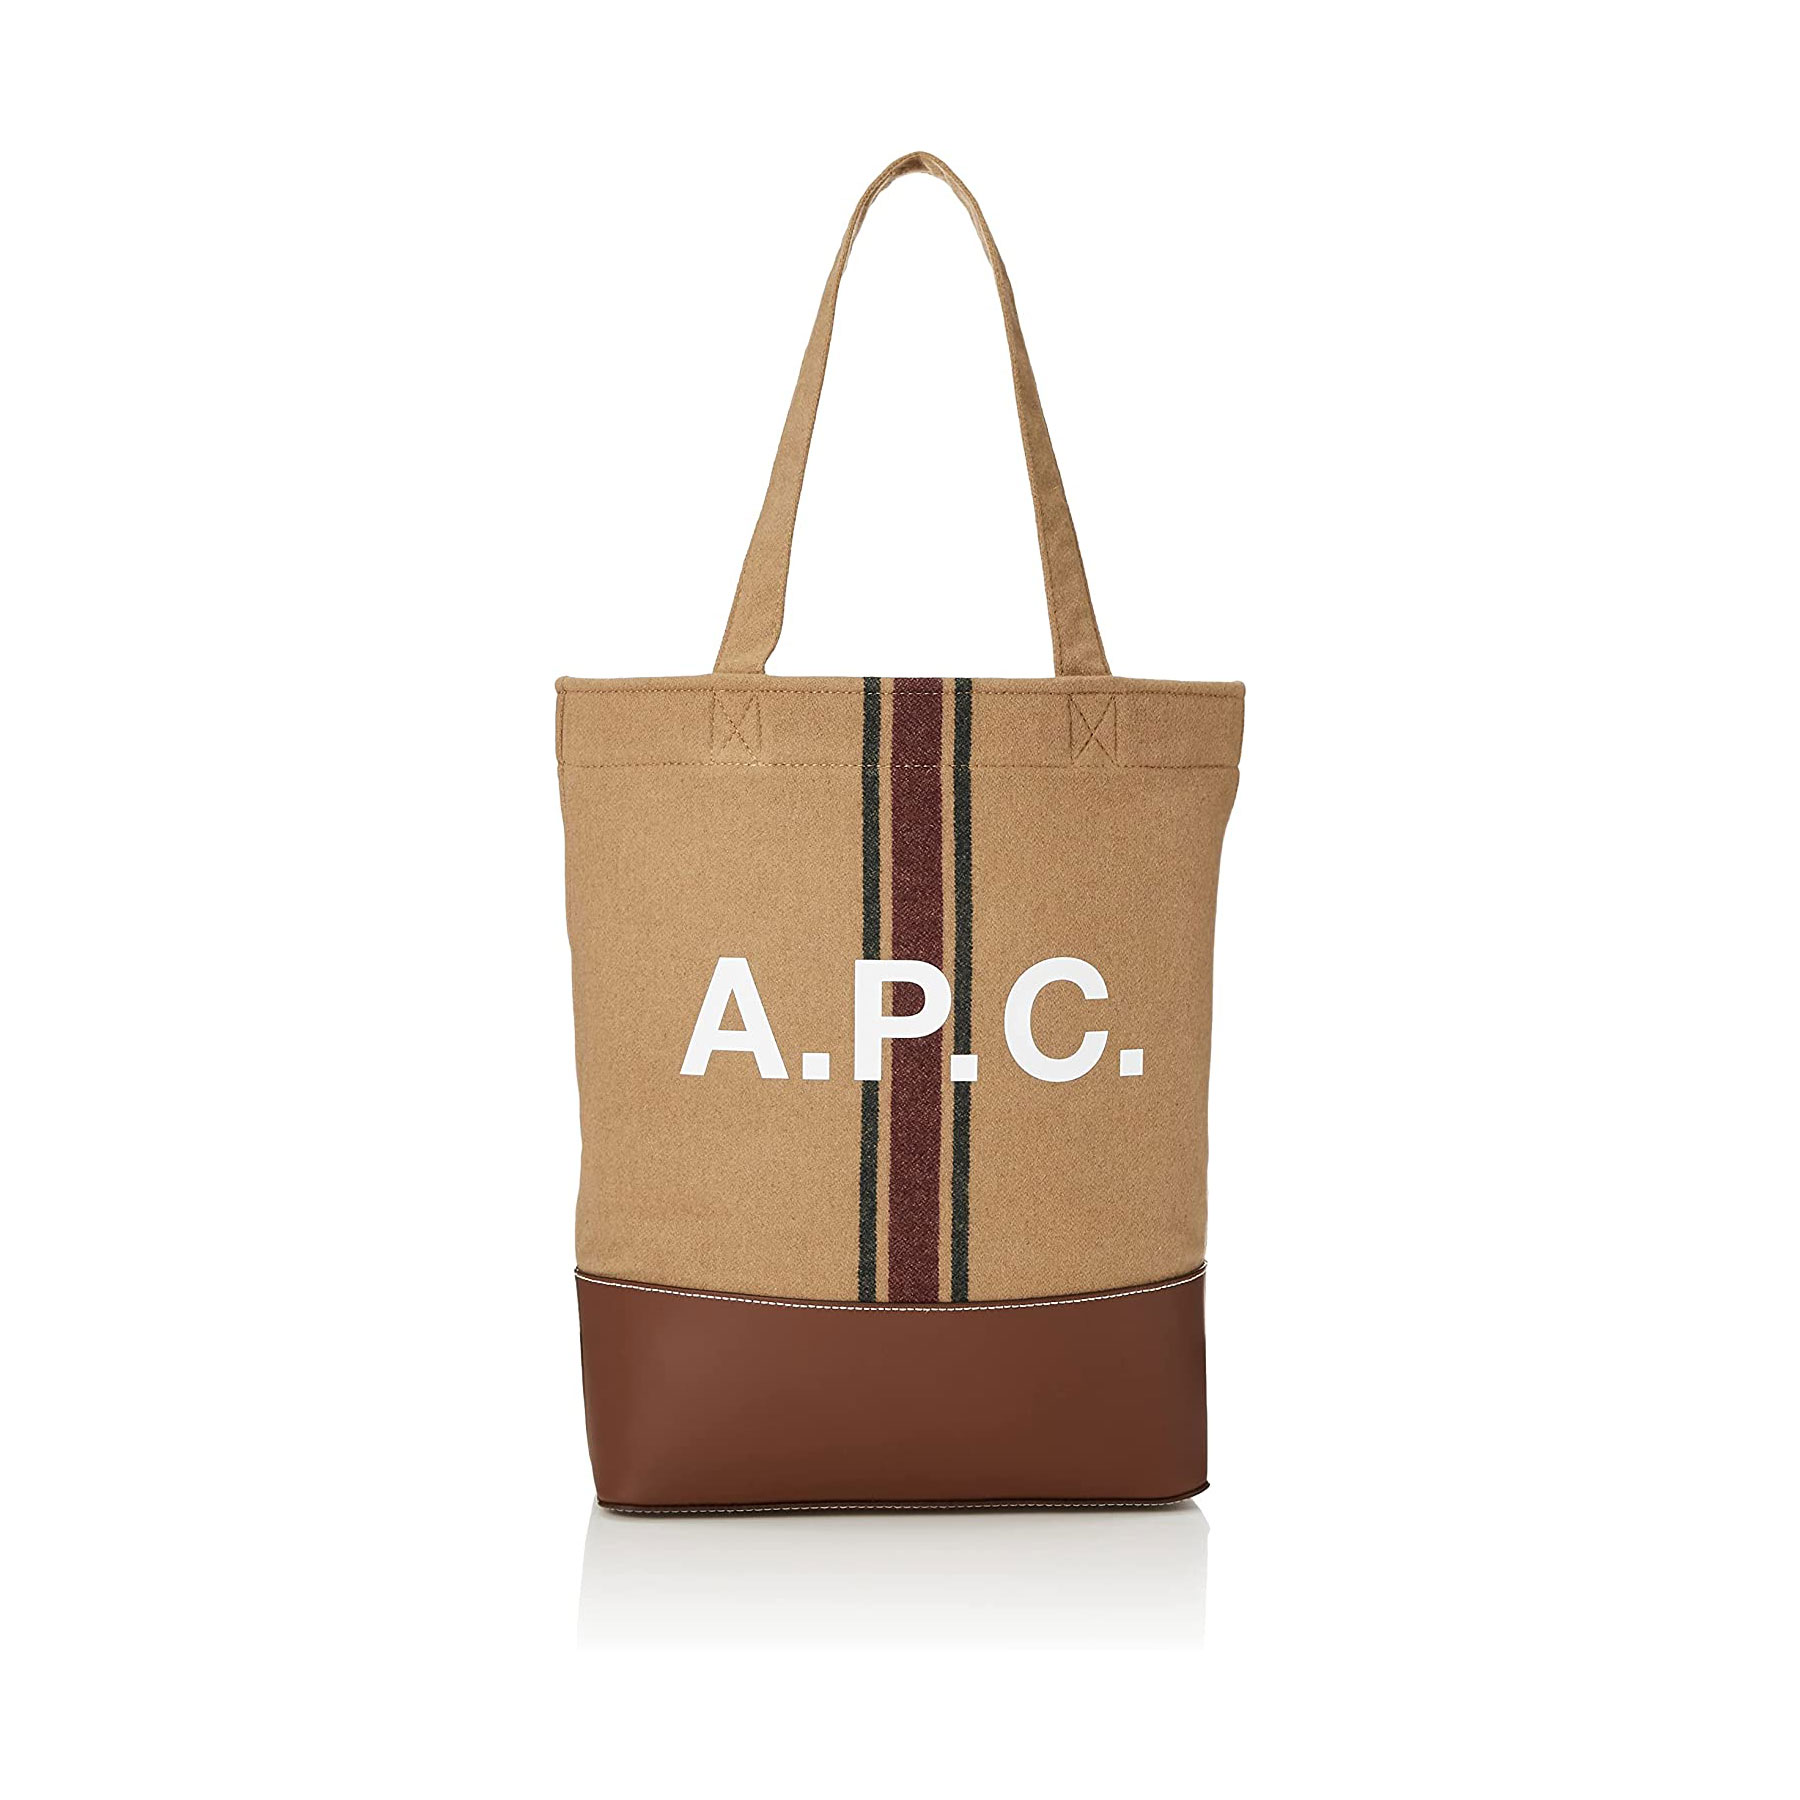 Amazonタイムセール祭り】「A.P.C.（アーペーセー）のバッグ